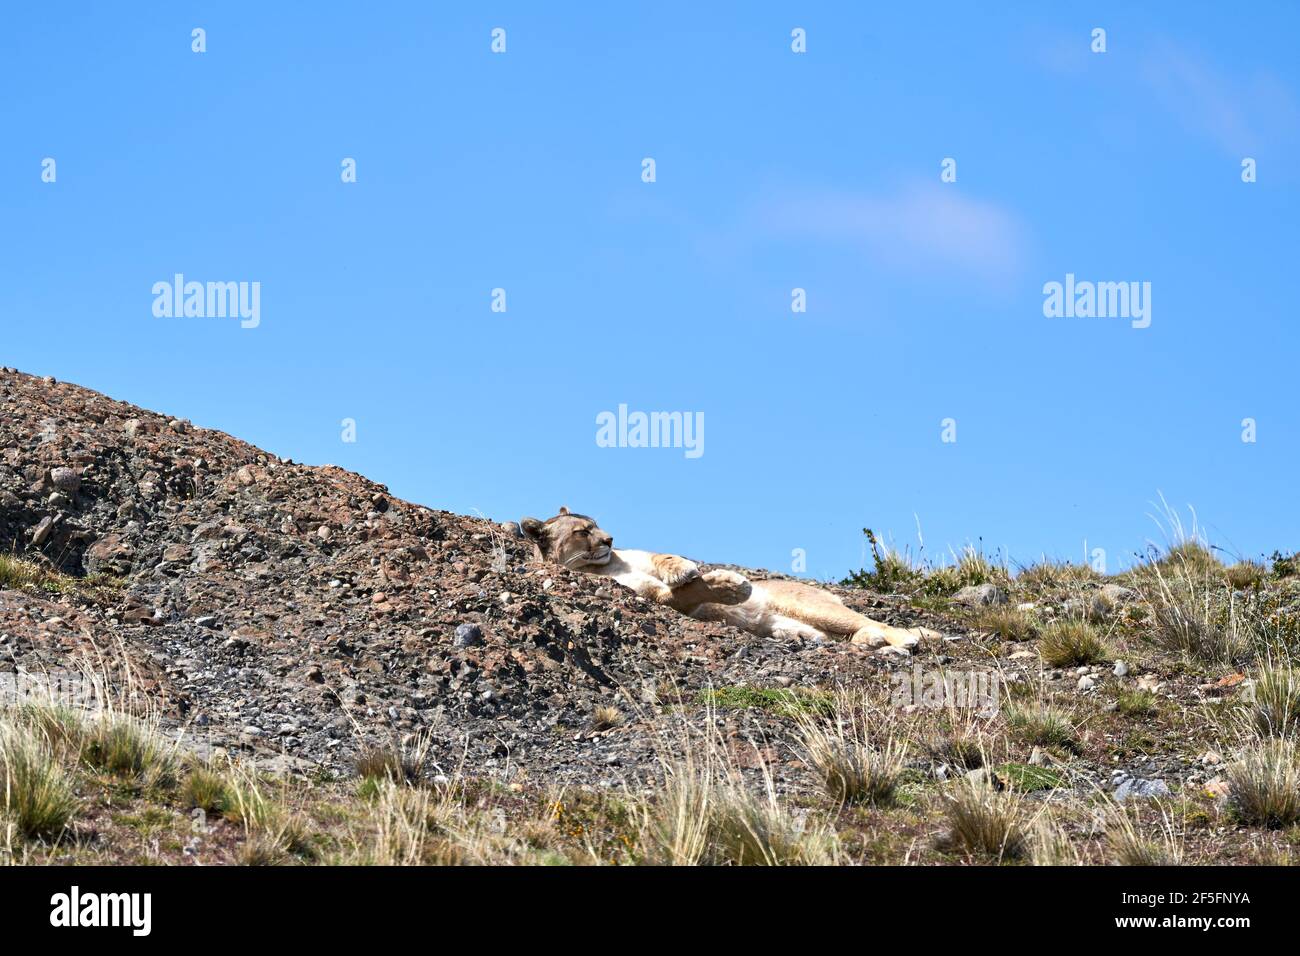 Puma concolor, Cougar oder Berglöwe ist eine große Wildkatze der Unterfamilie Felinae. Liegt auf einem Kamm der andenberge in Torres del Paine natio Stockfoto